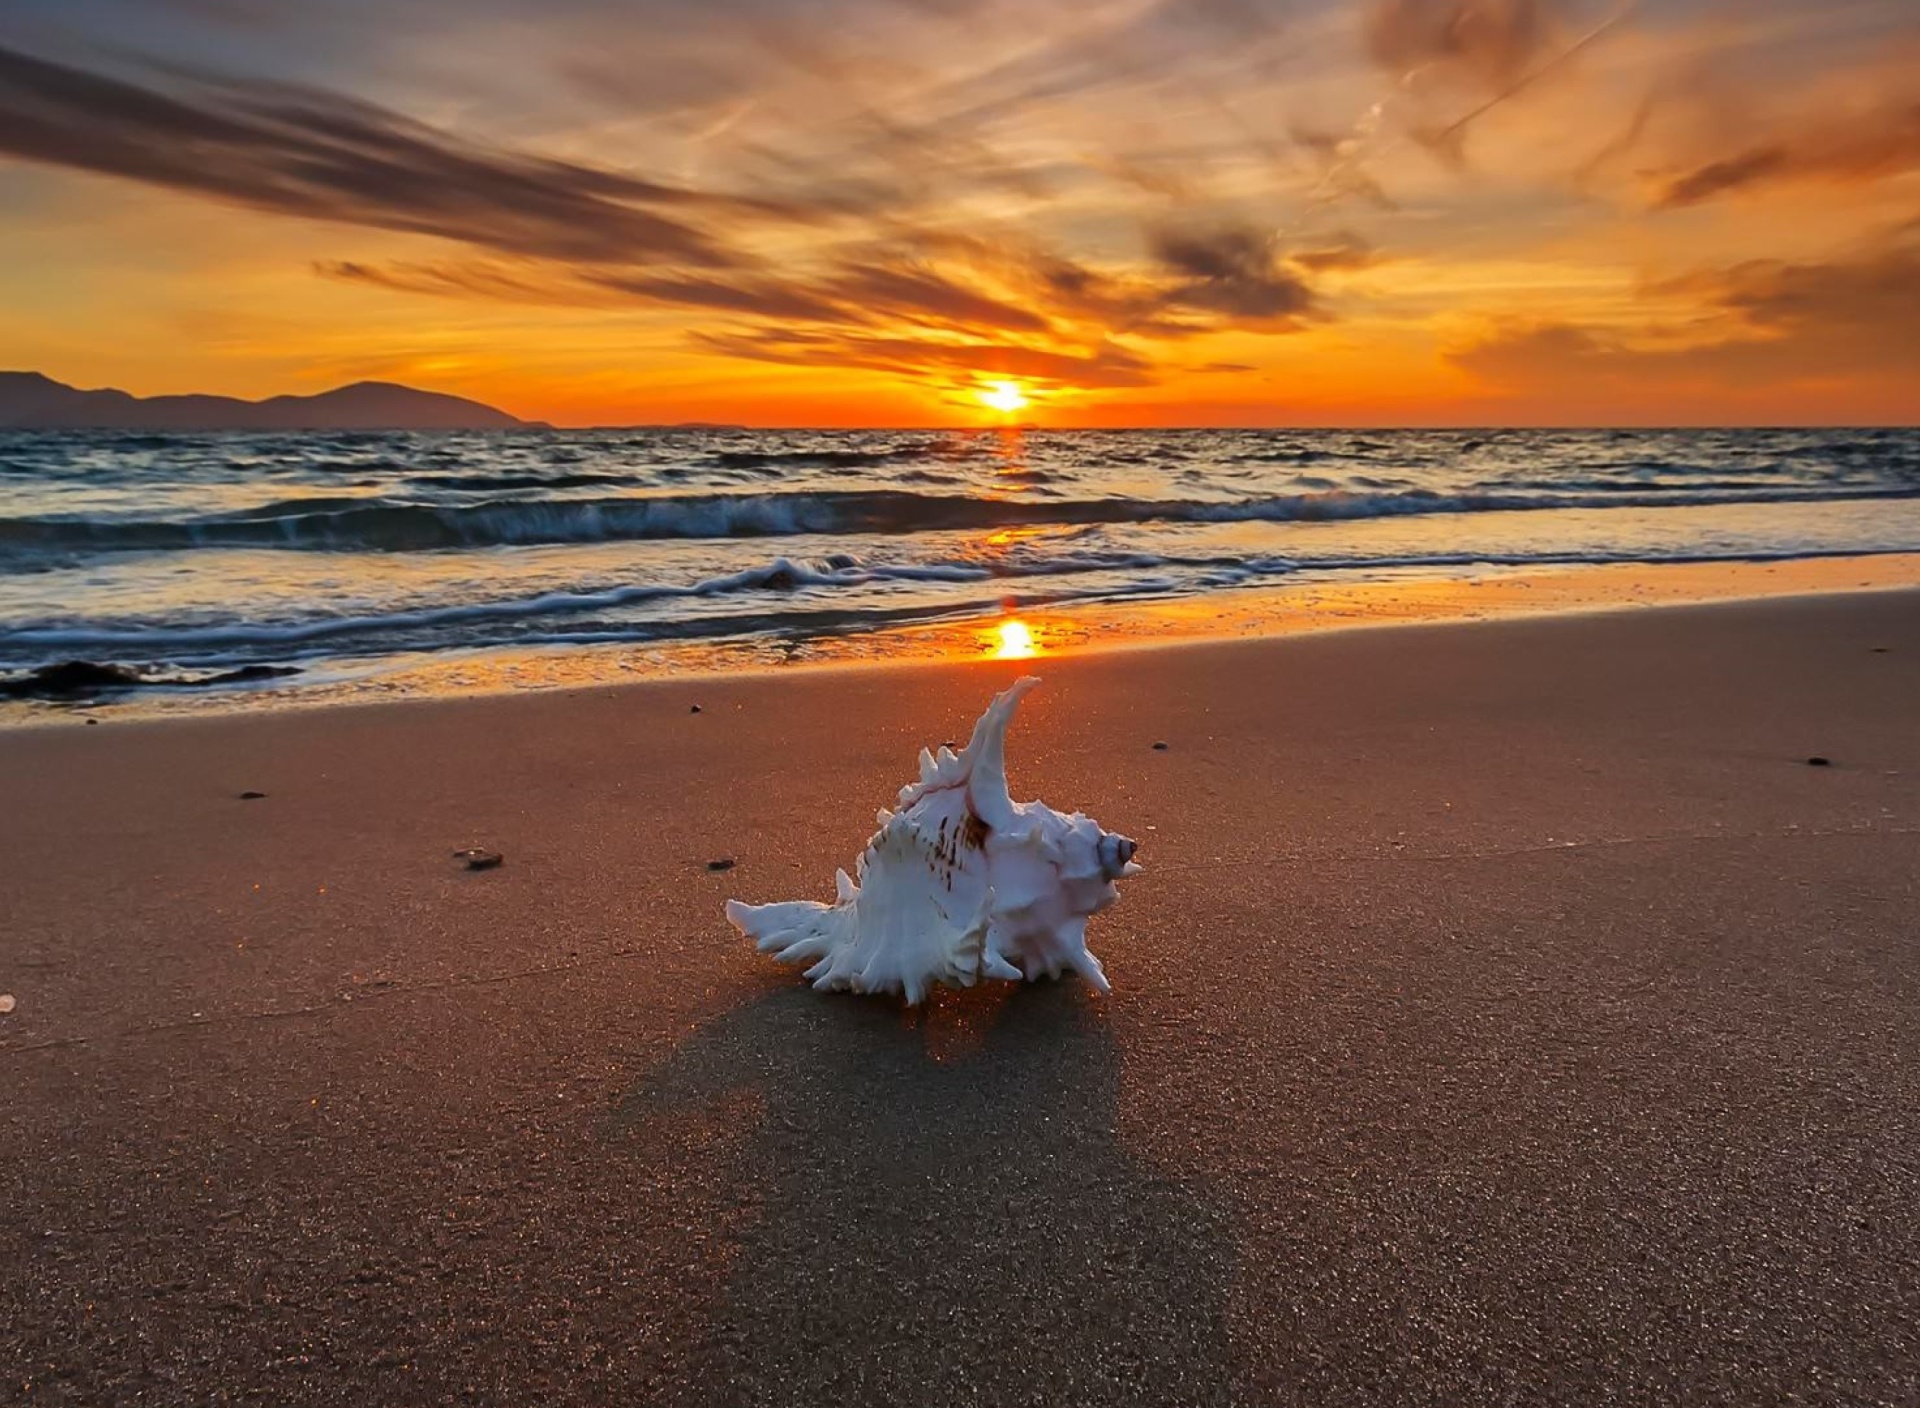 Обои Sunset on Beach with Shell 1920x1408